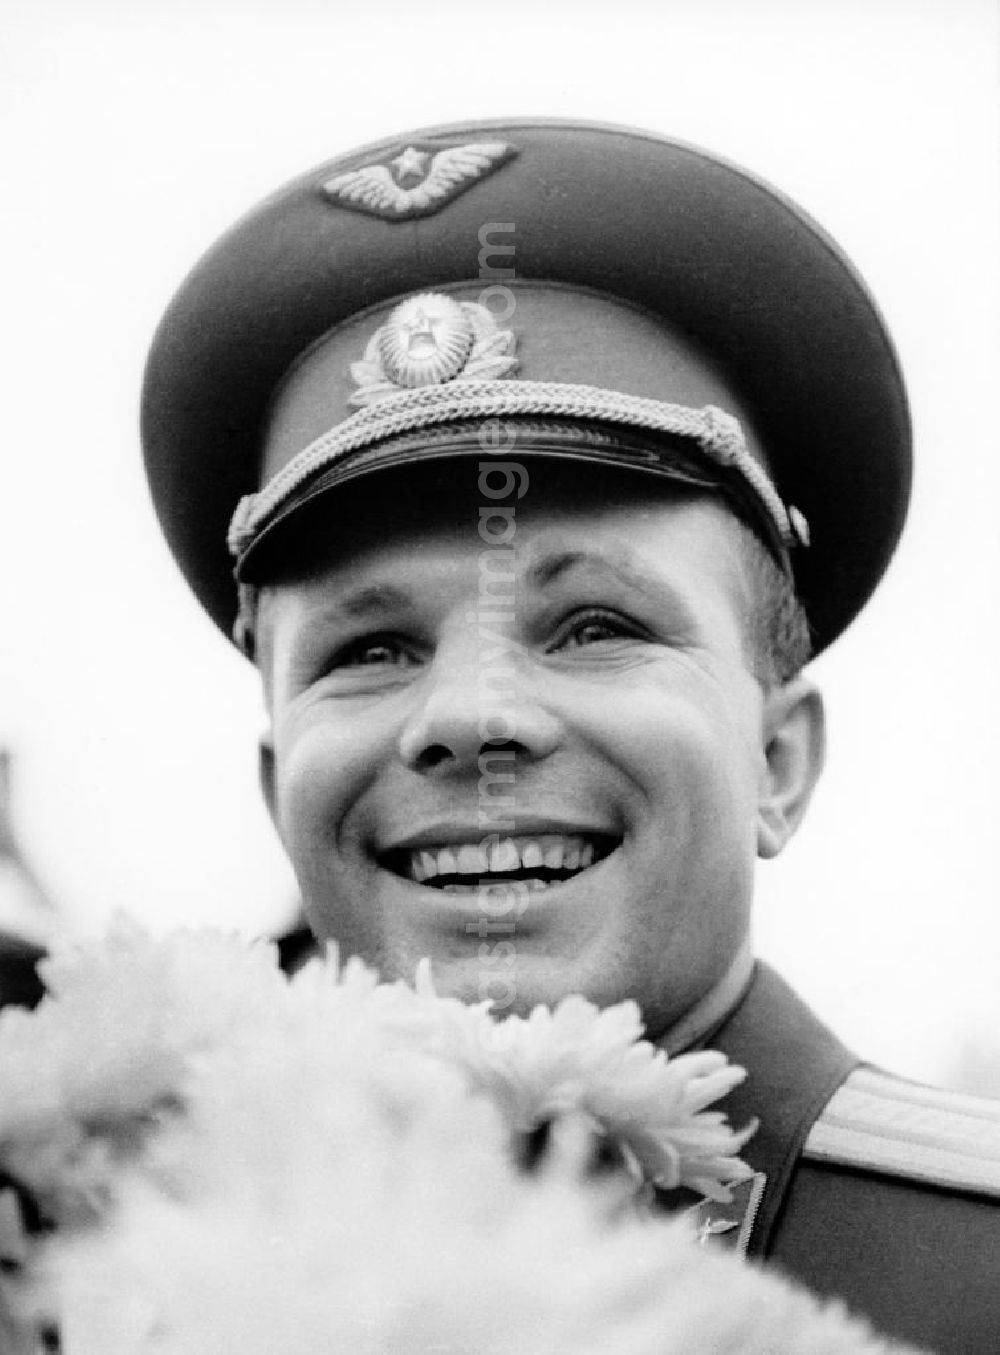 Berlin Schönefeld: Porträt von Juri Alexejewitsch Gagarin bei der Ankuft auf den Flughafen Berlin-Schönefeld. Juri Gagarin wurde am 9. März 1934 in Russland geboren. Der Pilot Gagarin wurde 196